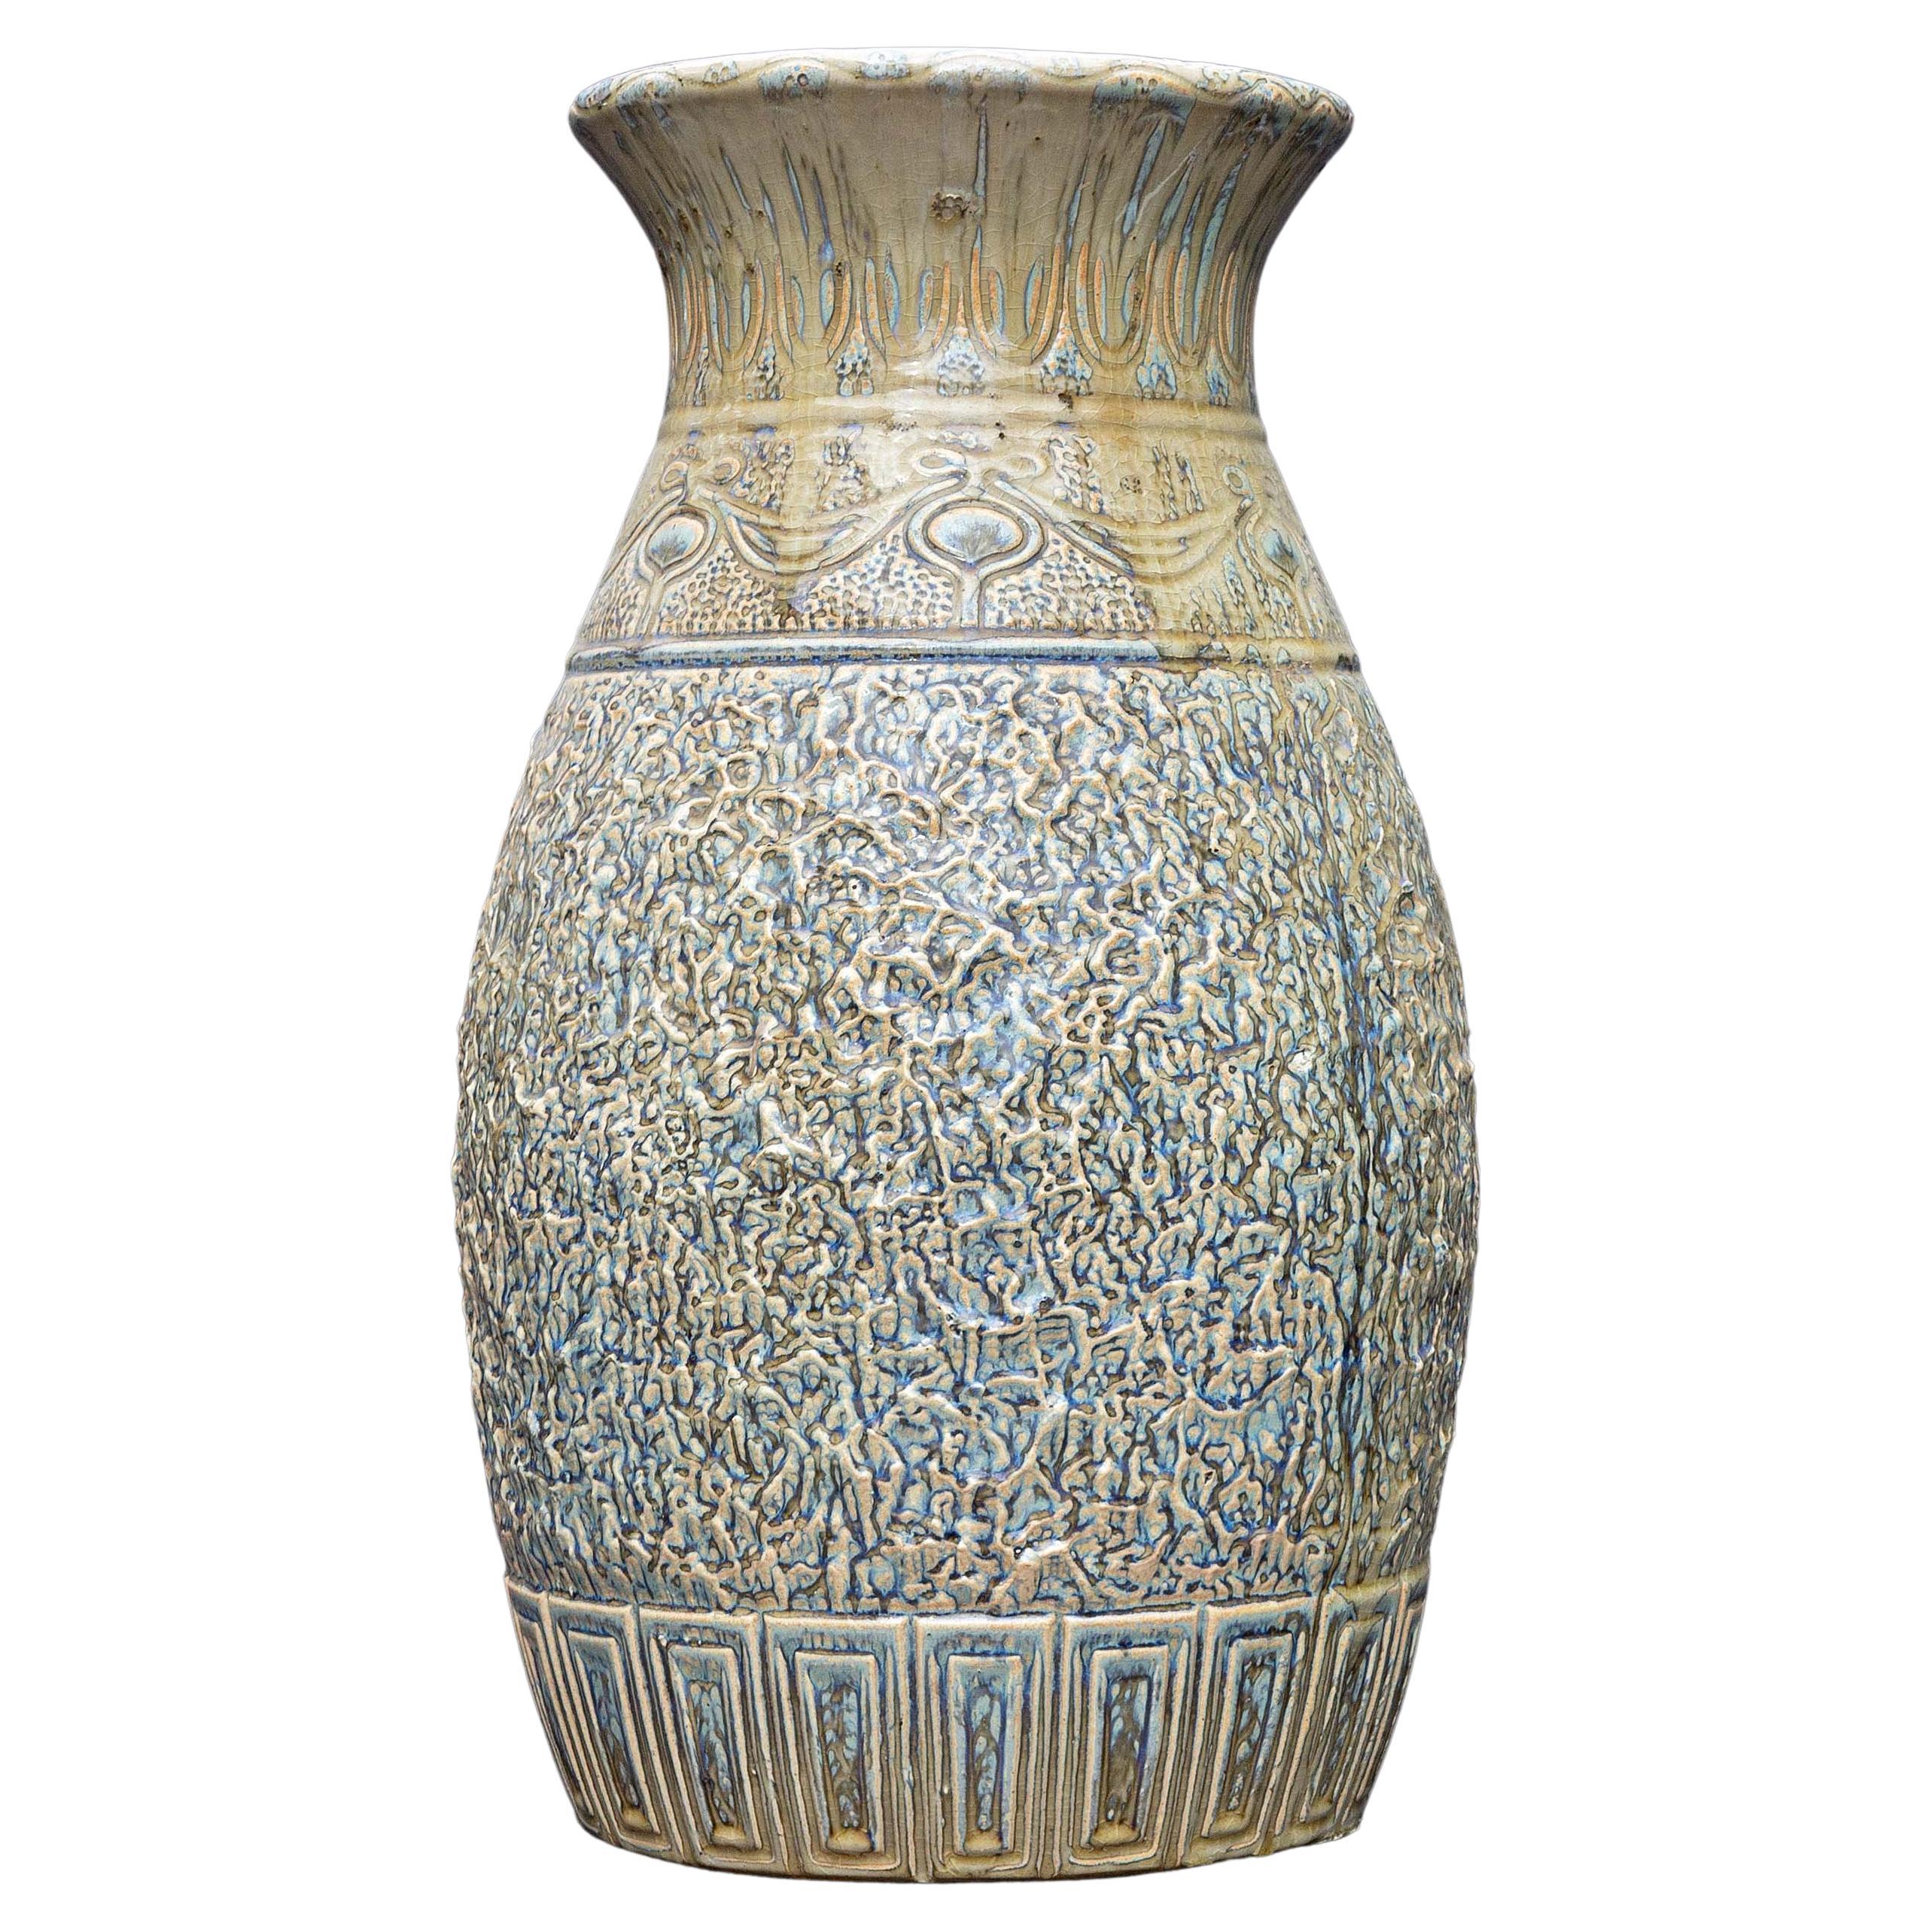 Grand vase de sol en poterie Arts and Crafts à glaçure épaisse du début du 20ème siècle